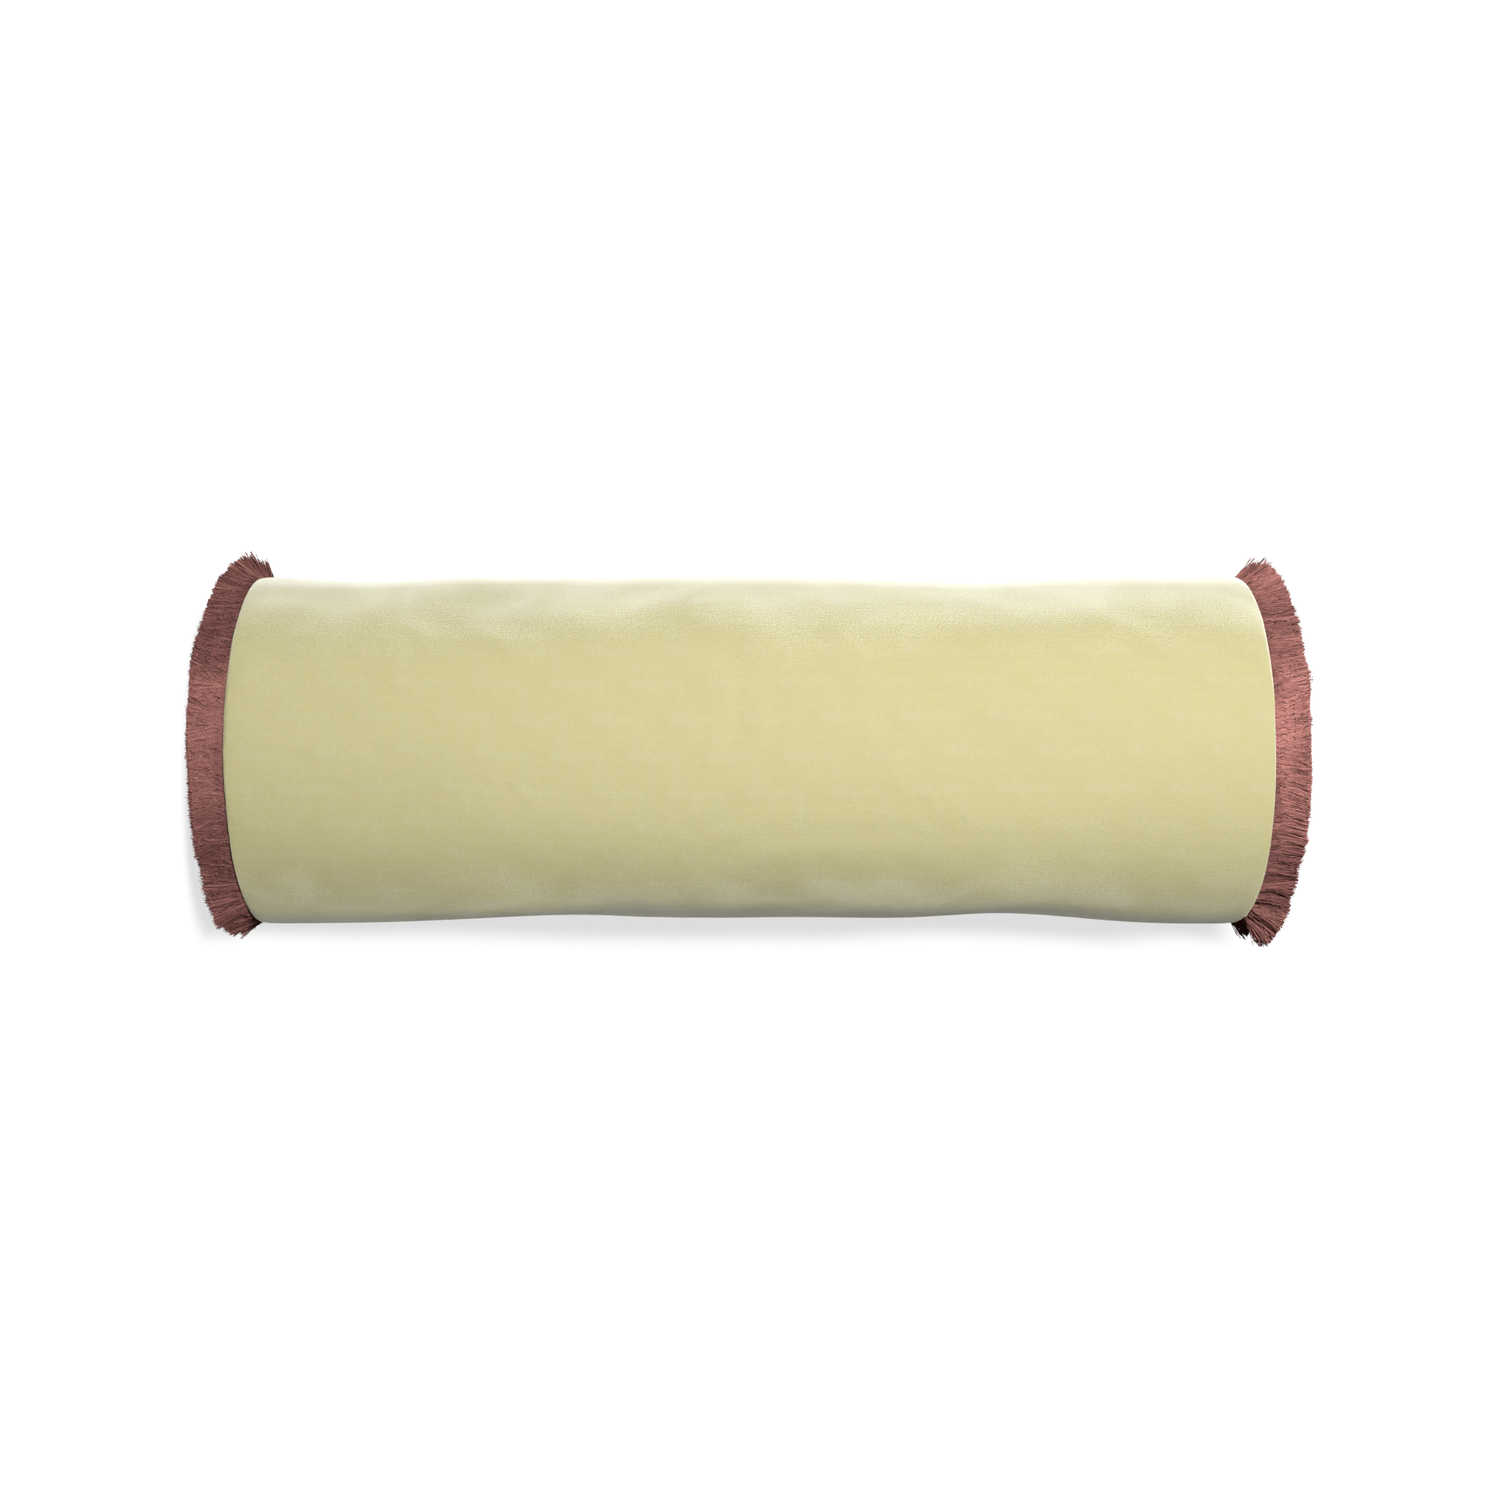 Bolster pear velvet custom pillow with d fringe on white background